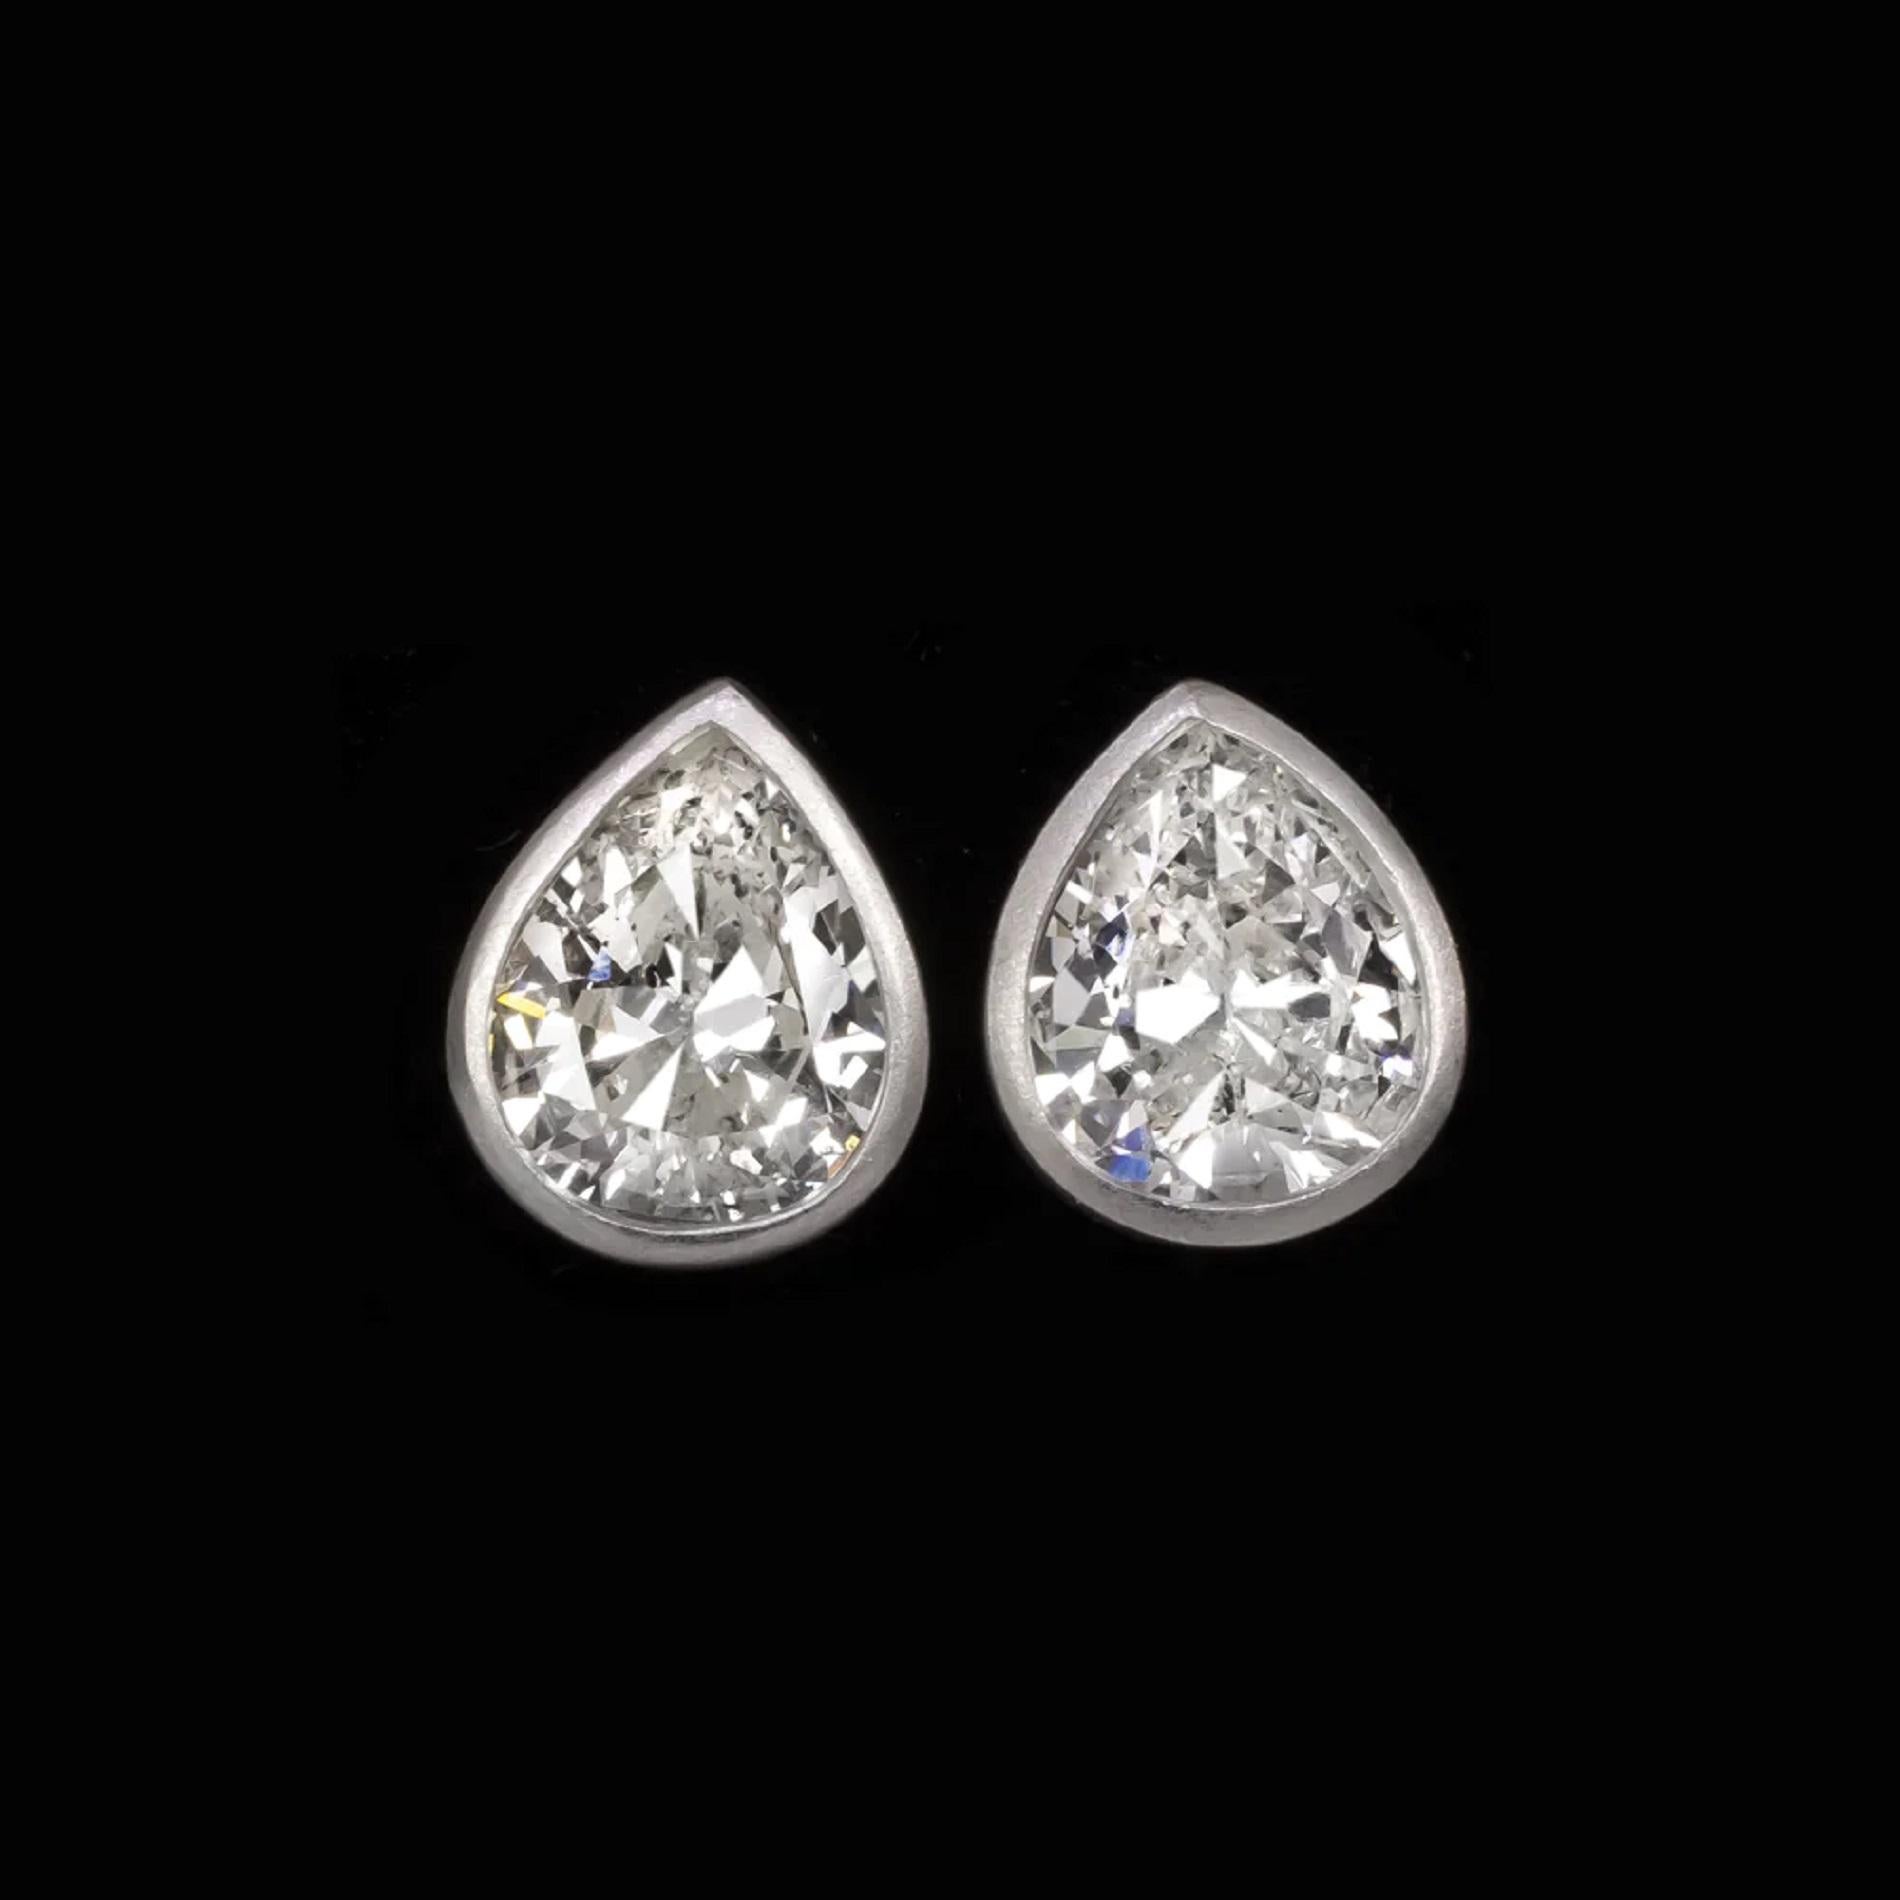 2 carat pear shaped diamond earrings